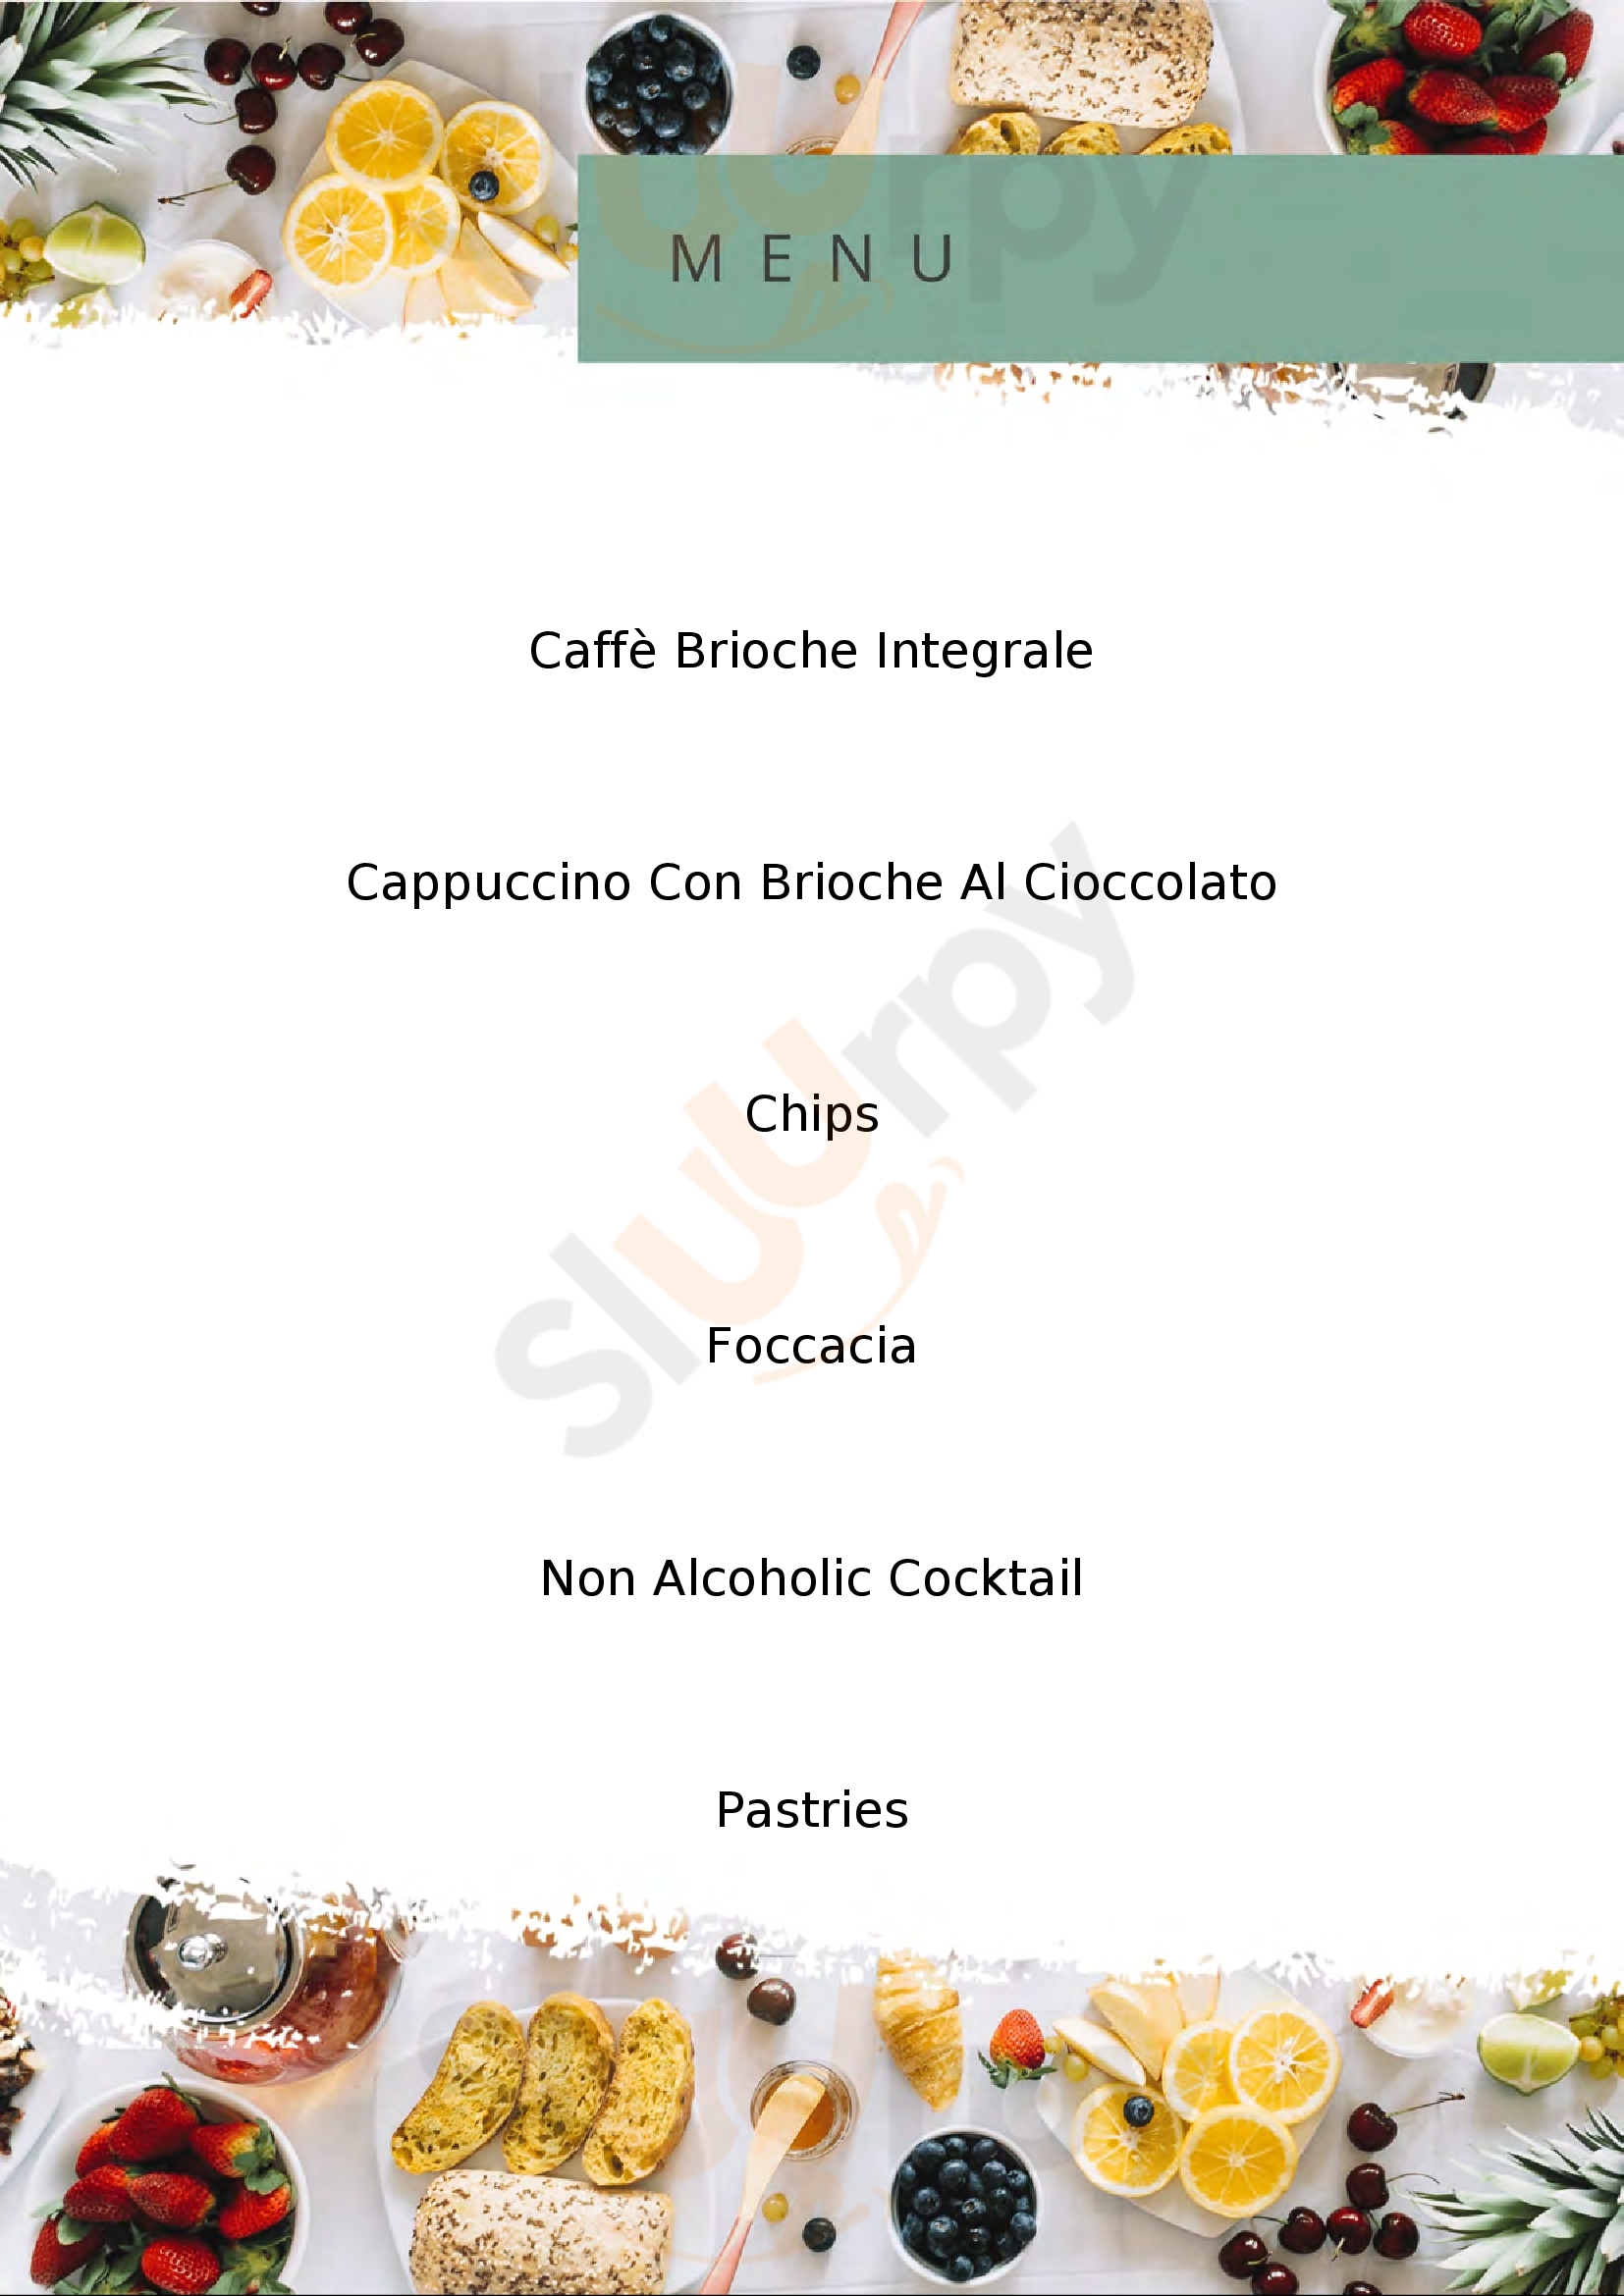 Moderno Pasticceria & Caffe dal 1954 Lurago D'Erba menù 1 pagina